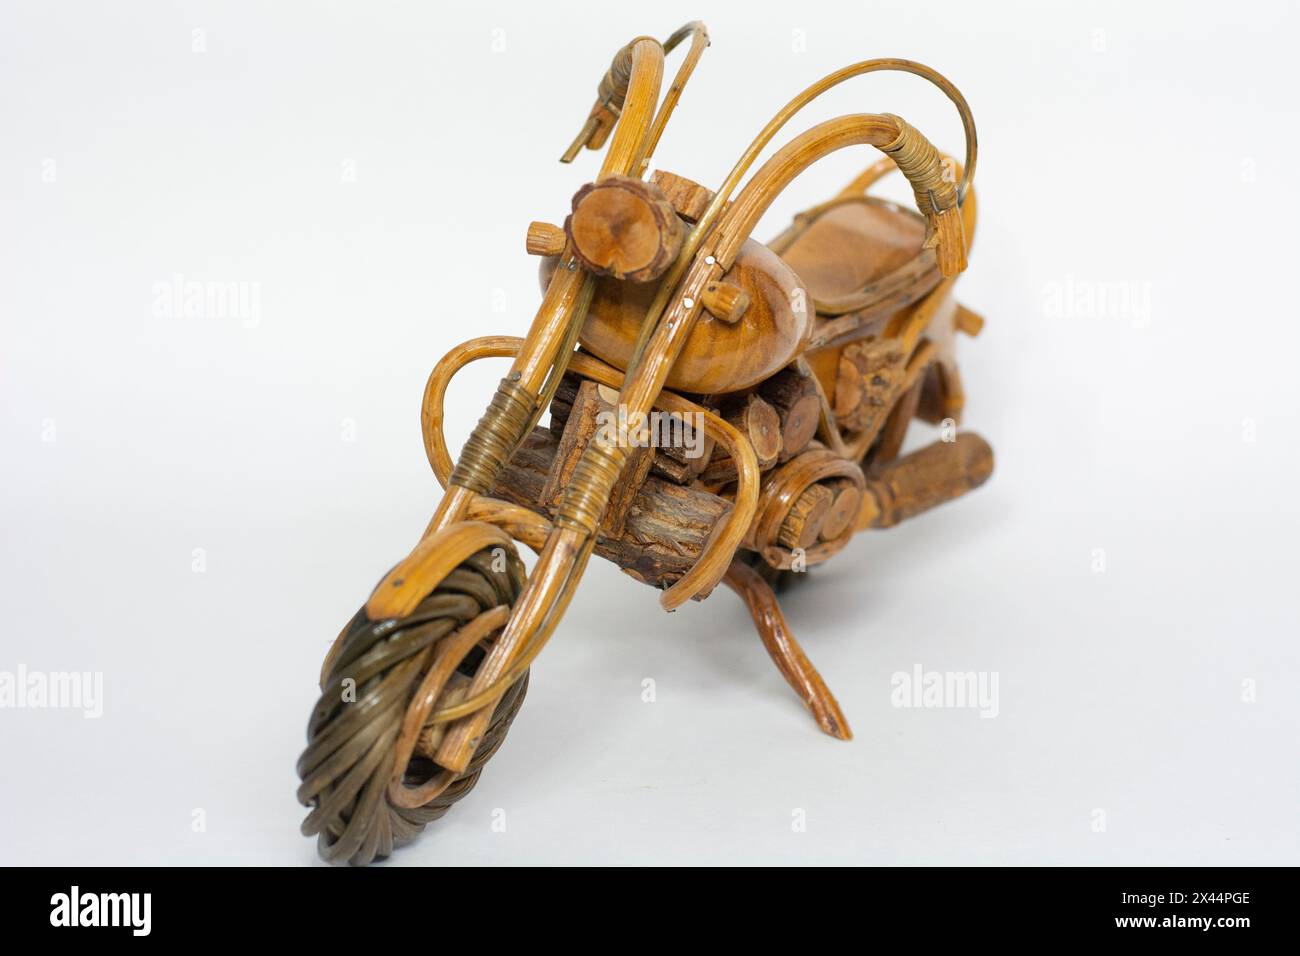 Motorradmodell aus Holz von vorne Foto Stock